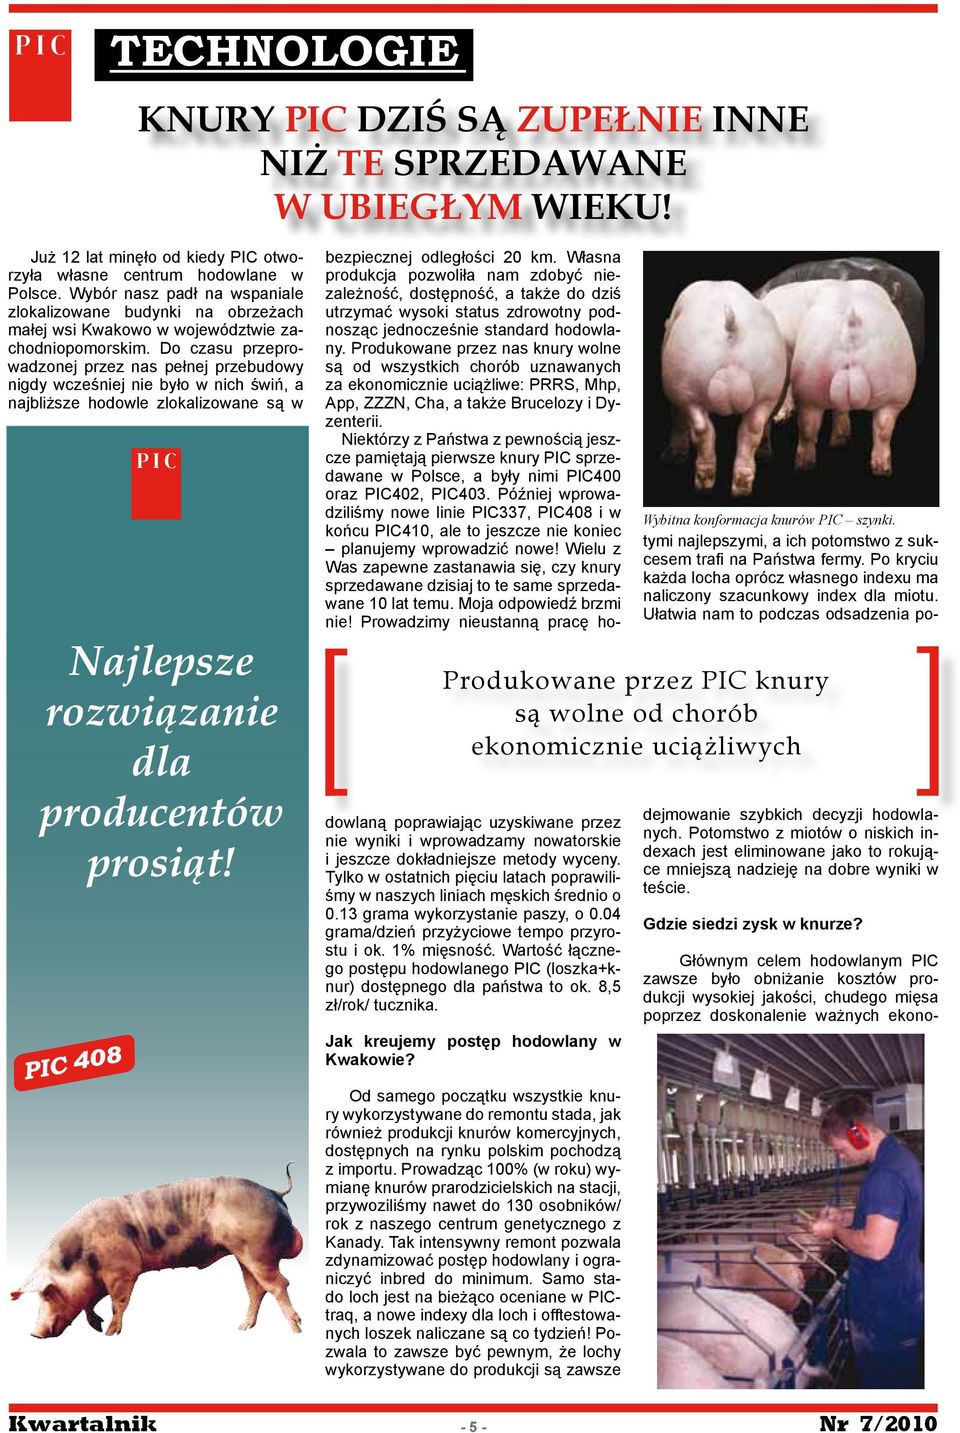 Do czasu przeprowadzonej przez nas pełnej przebudowy nigdy wcześniej nie było w nich świń, a najbliższe hodowle zlokalizowane są w Produkowane przez PIC knury są wolne od chorób ekonomicznie